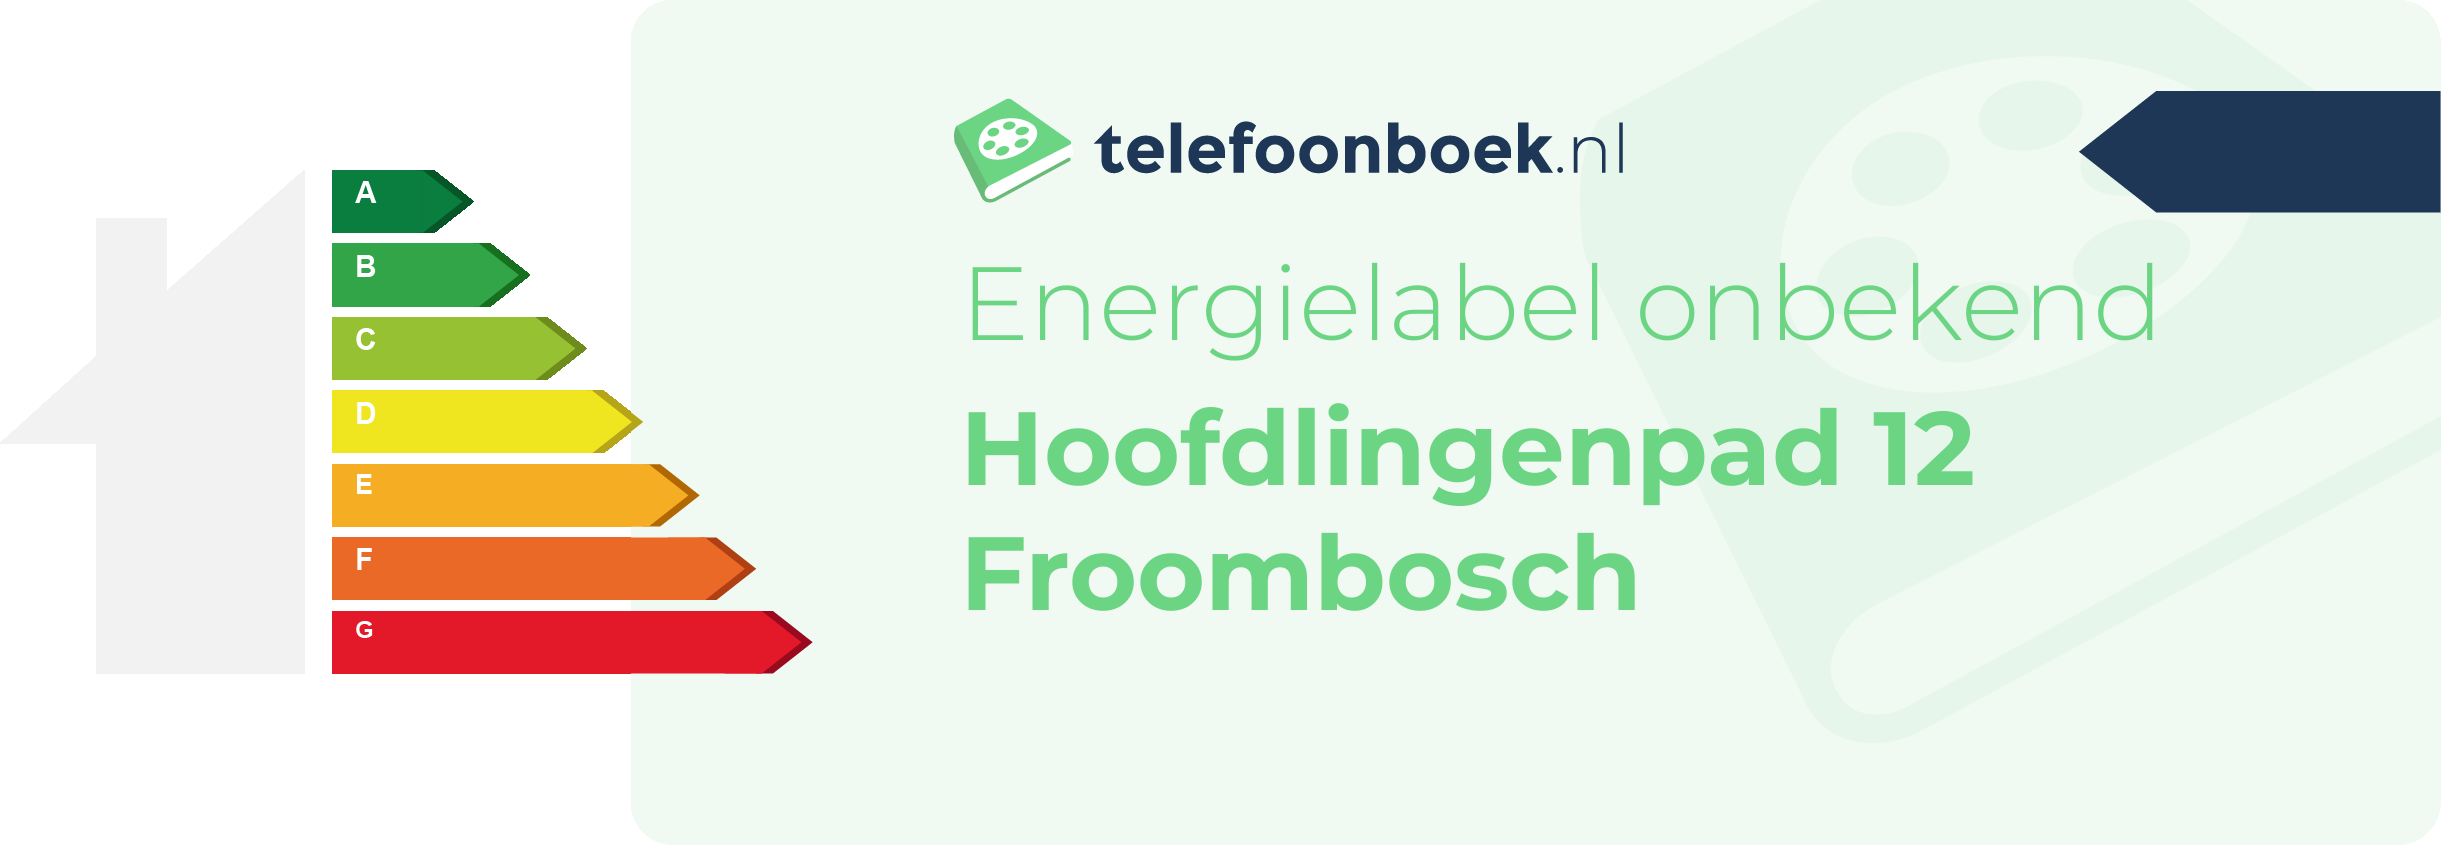 Energielabel Hoofdlingenpad 12 Froombosch